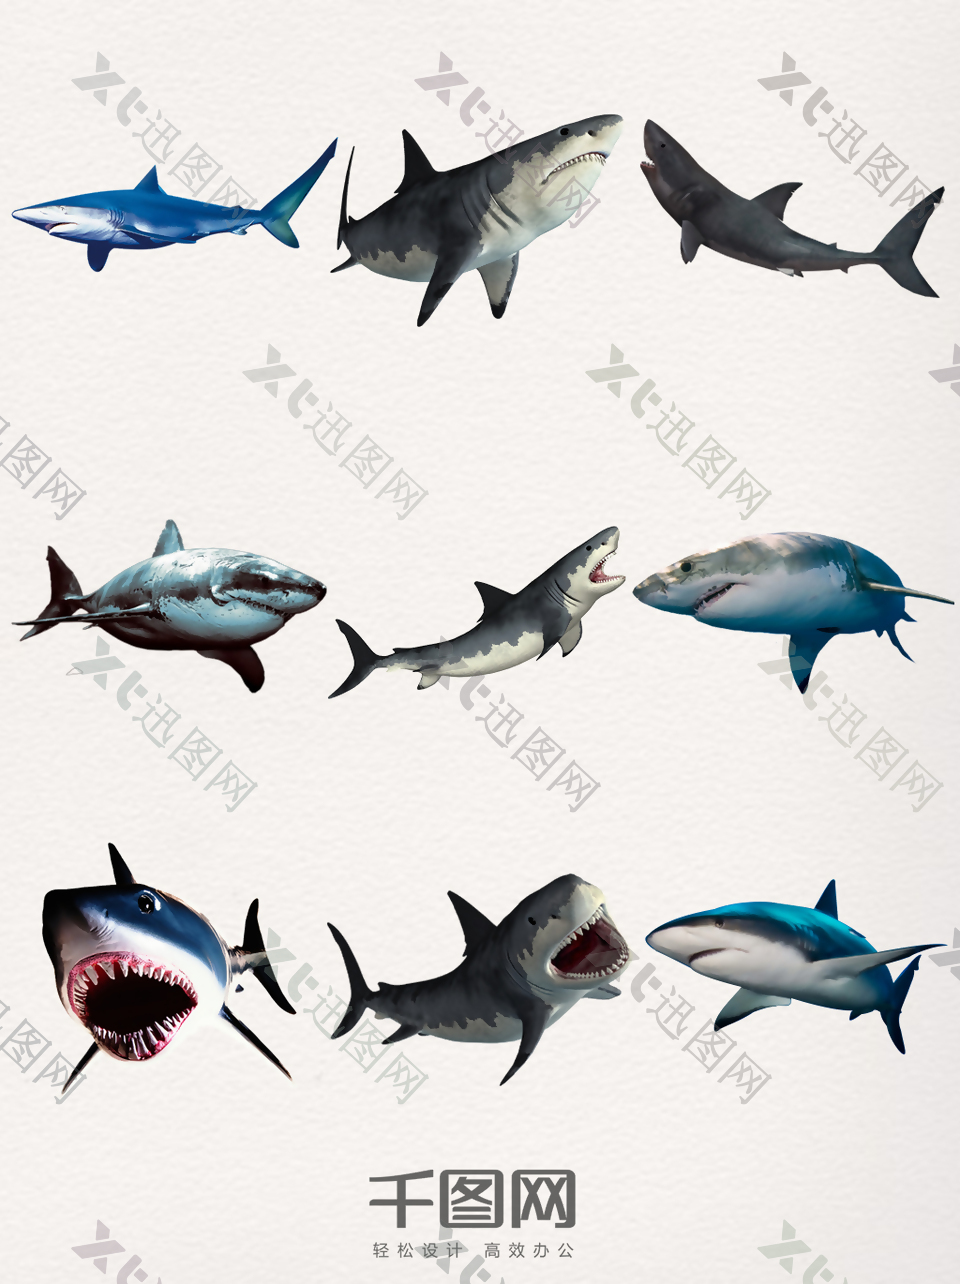 凶猛的鲨鱼元素素材